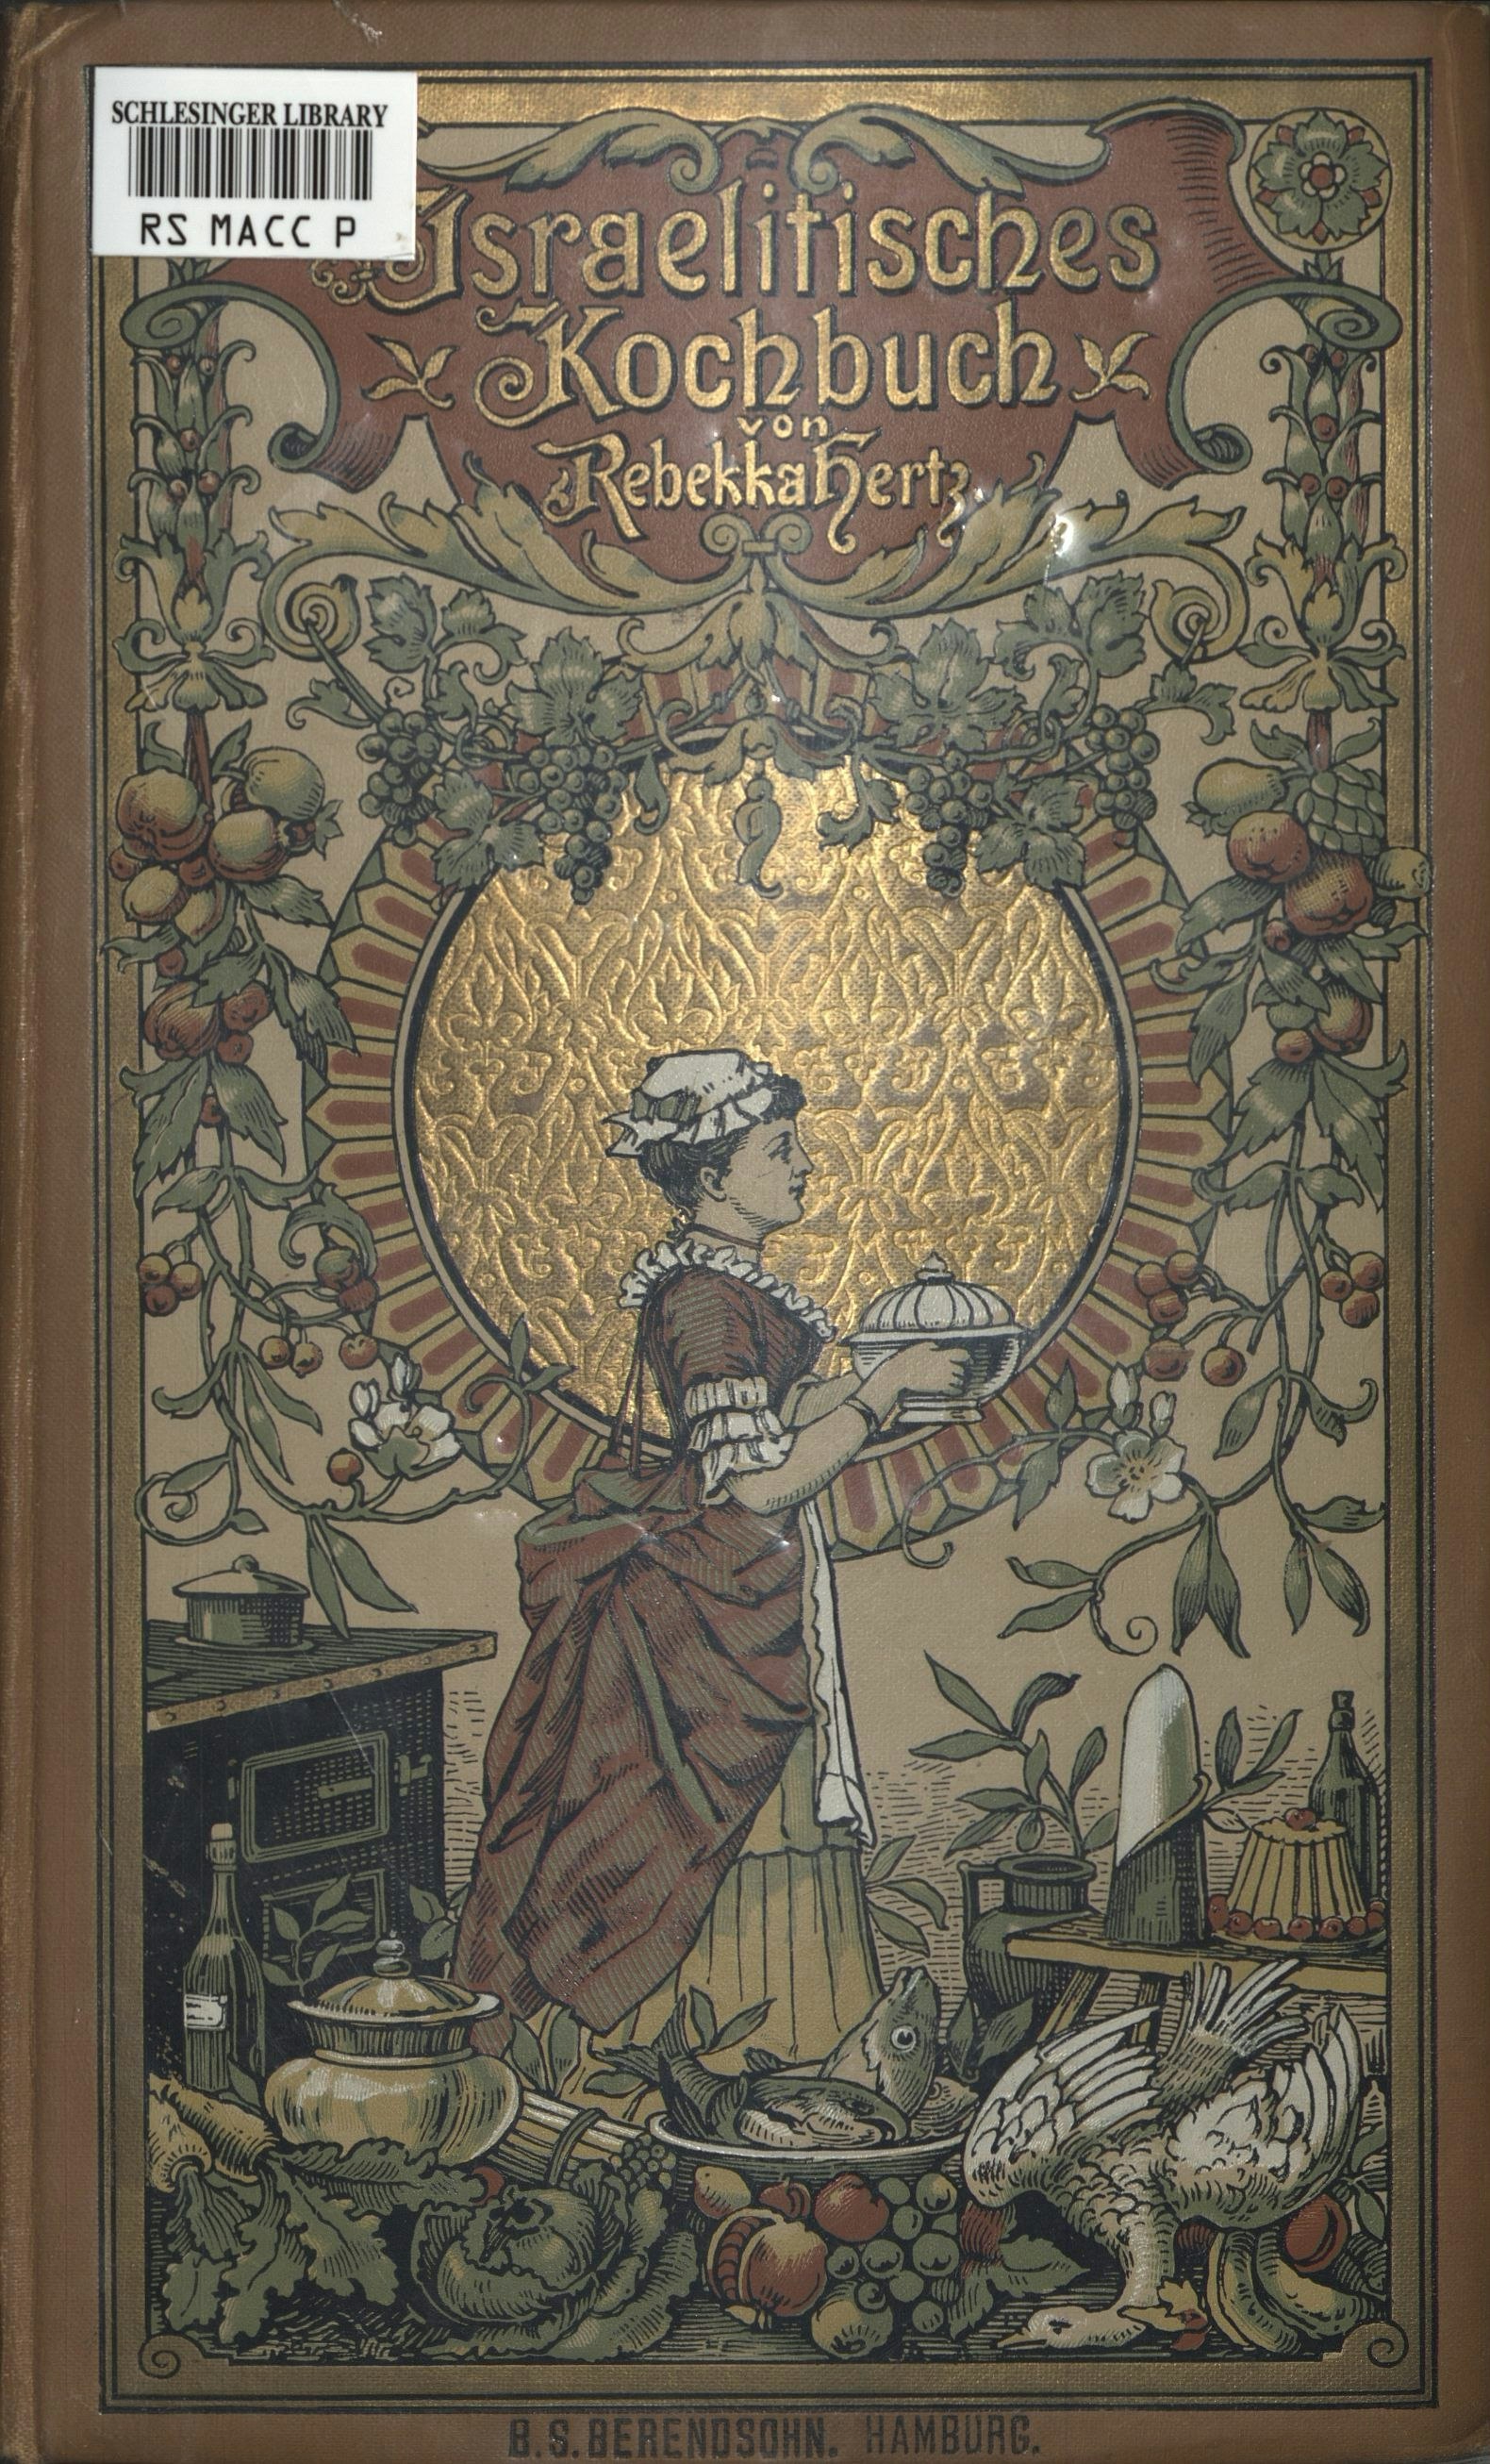 Vollstandiges Israelitisches Kochbuch by Marie Kauders, 1903 (Prag: Jakob B. Brandeis). 